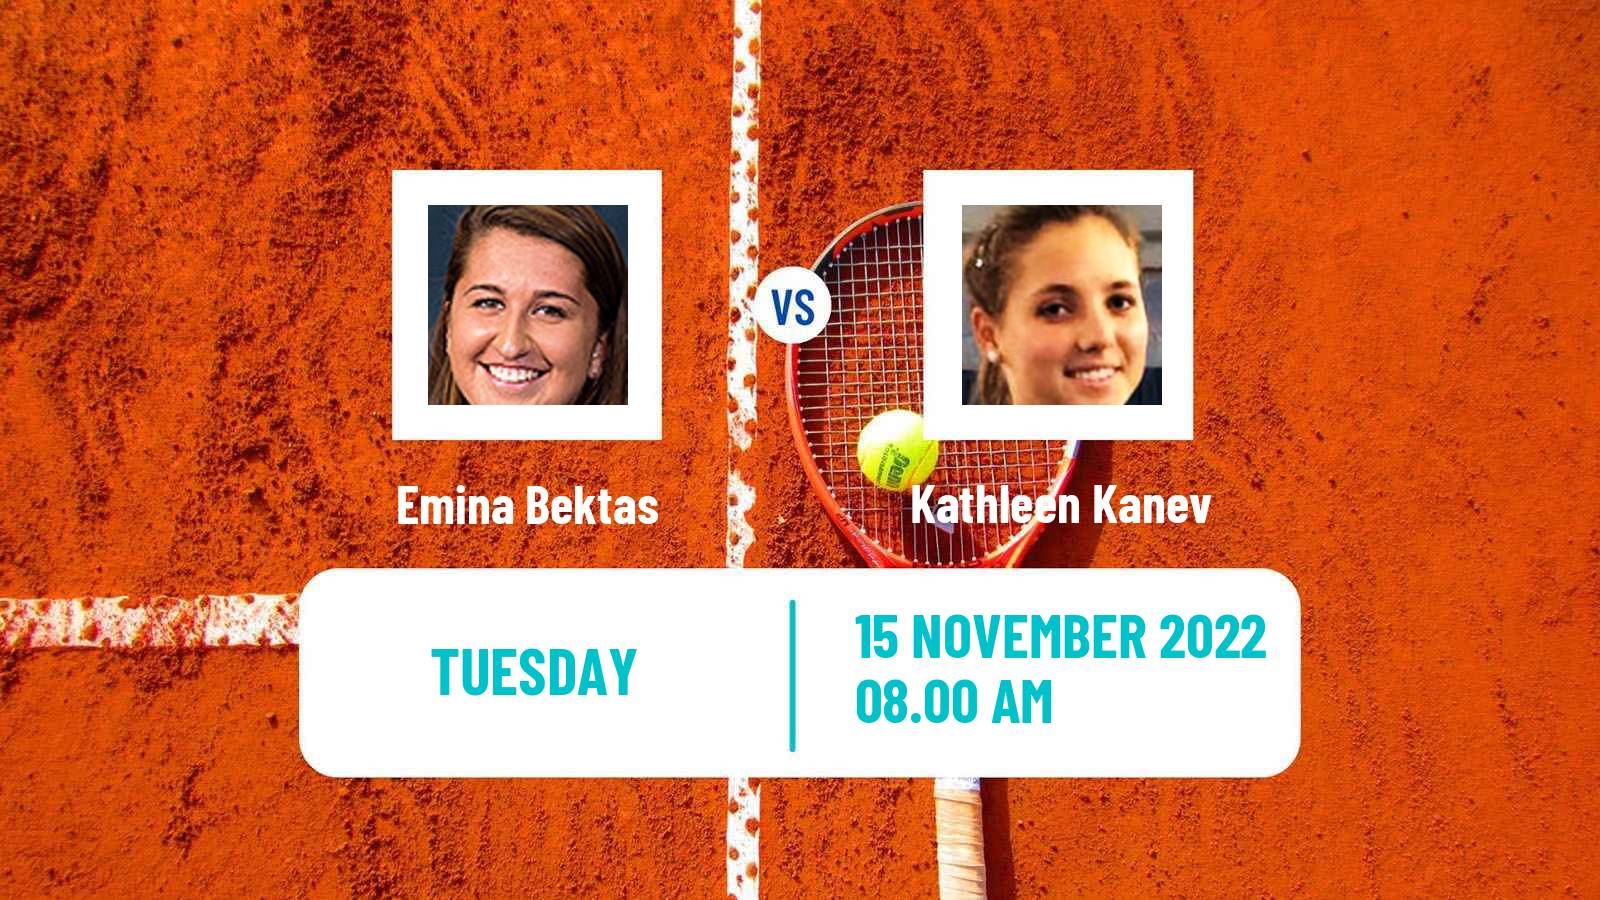 Tennis ITF Tournaments Emina Bektas - Kathleen Kanev